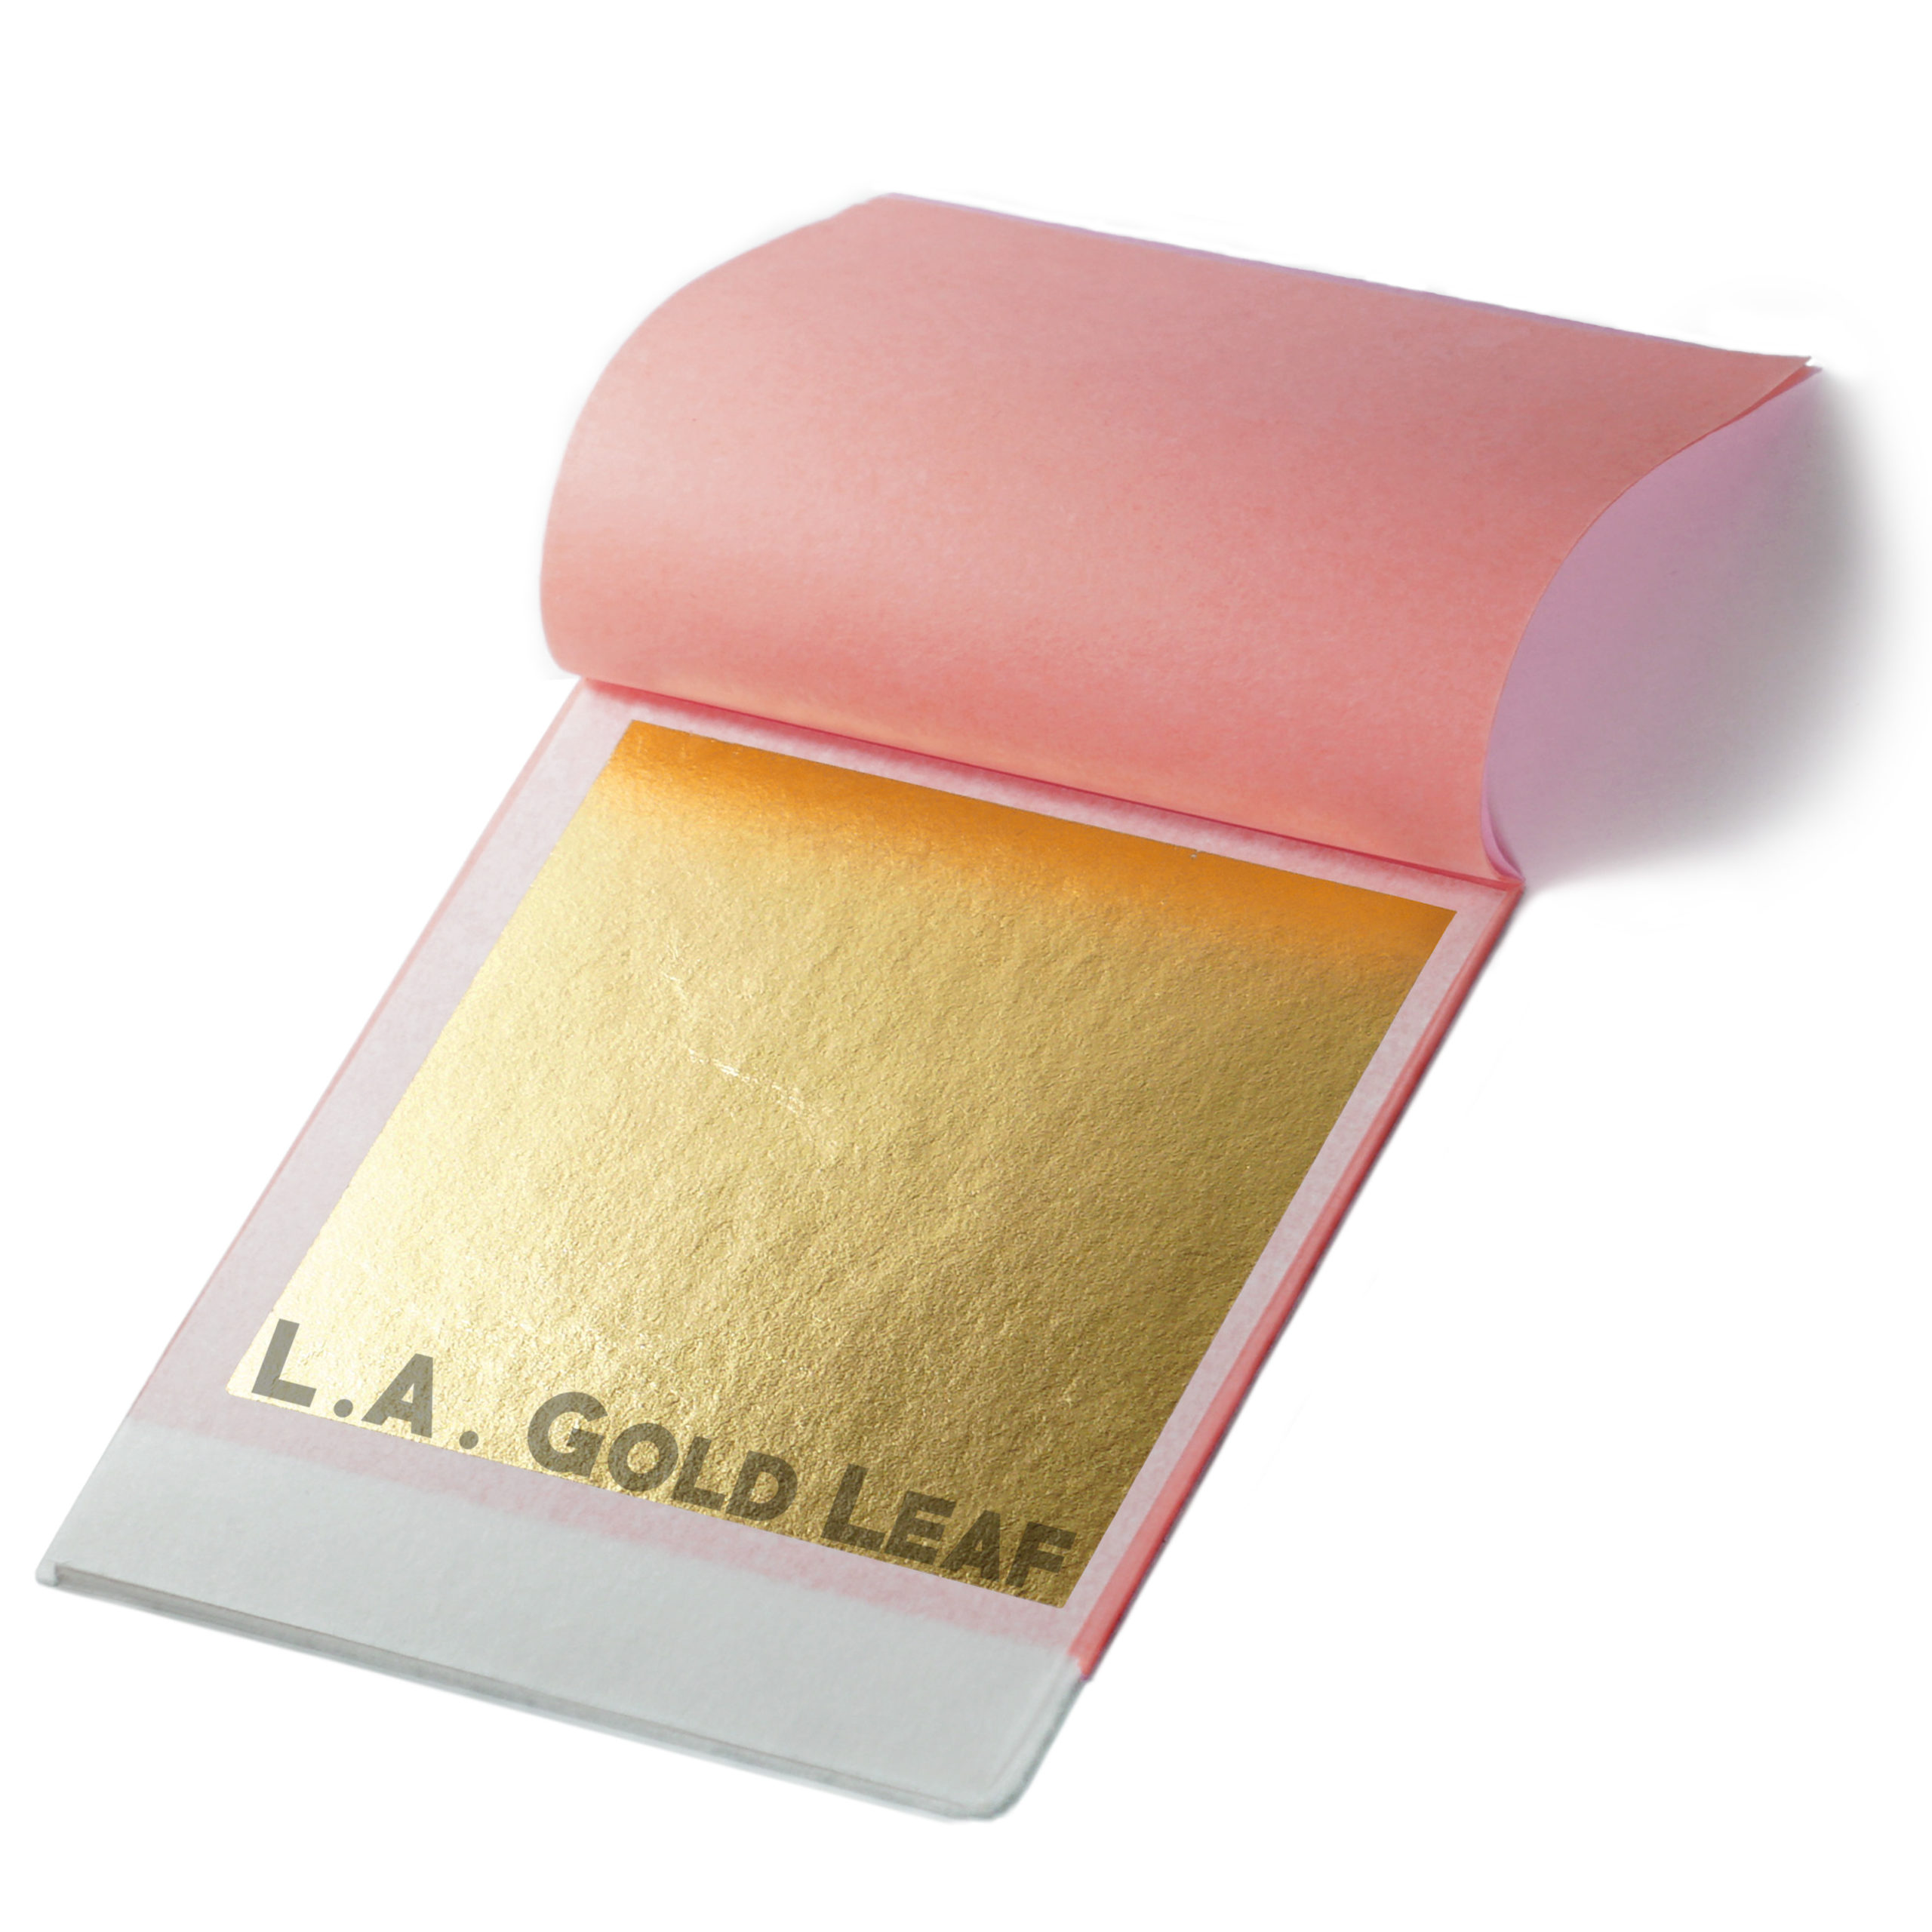 Imitation Gold Leaf Gilding Kit - 2 oz. — L.A. Gold Leaf Wholesaler U.S.